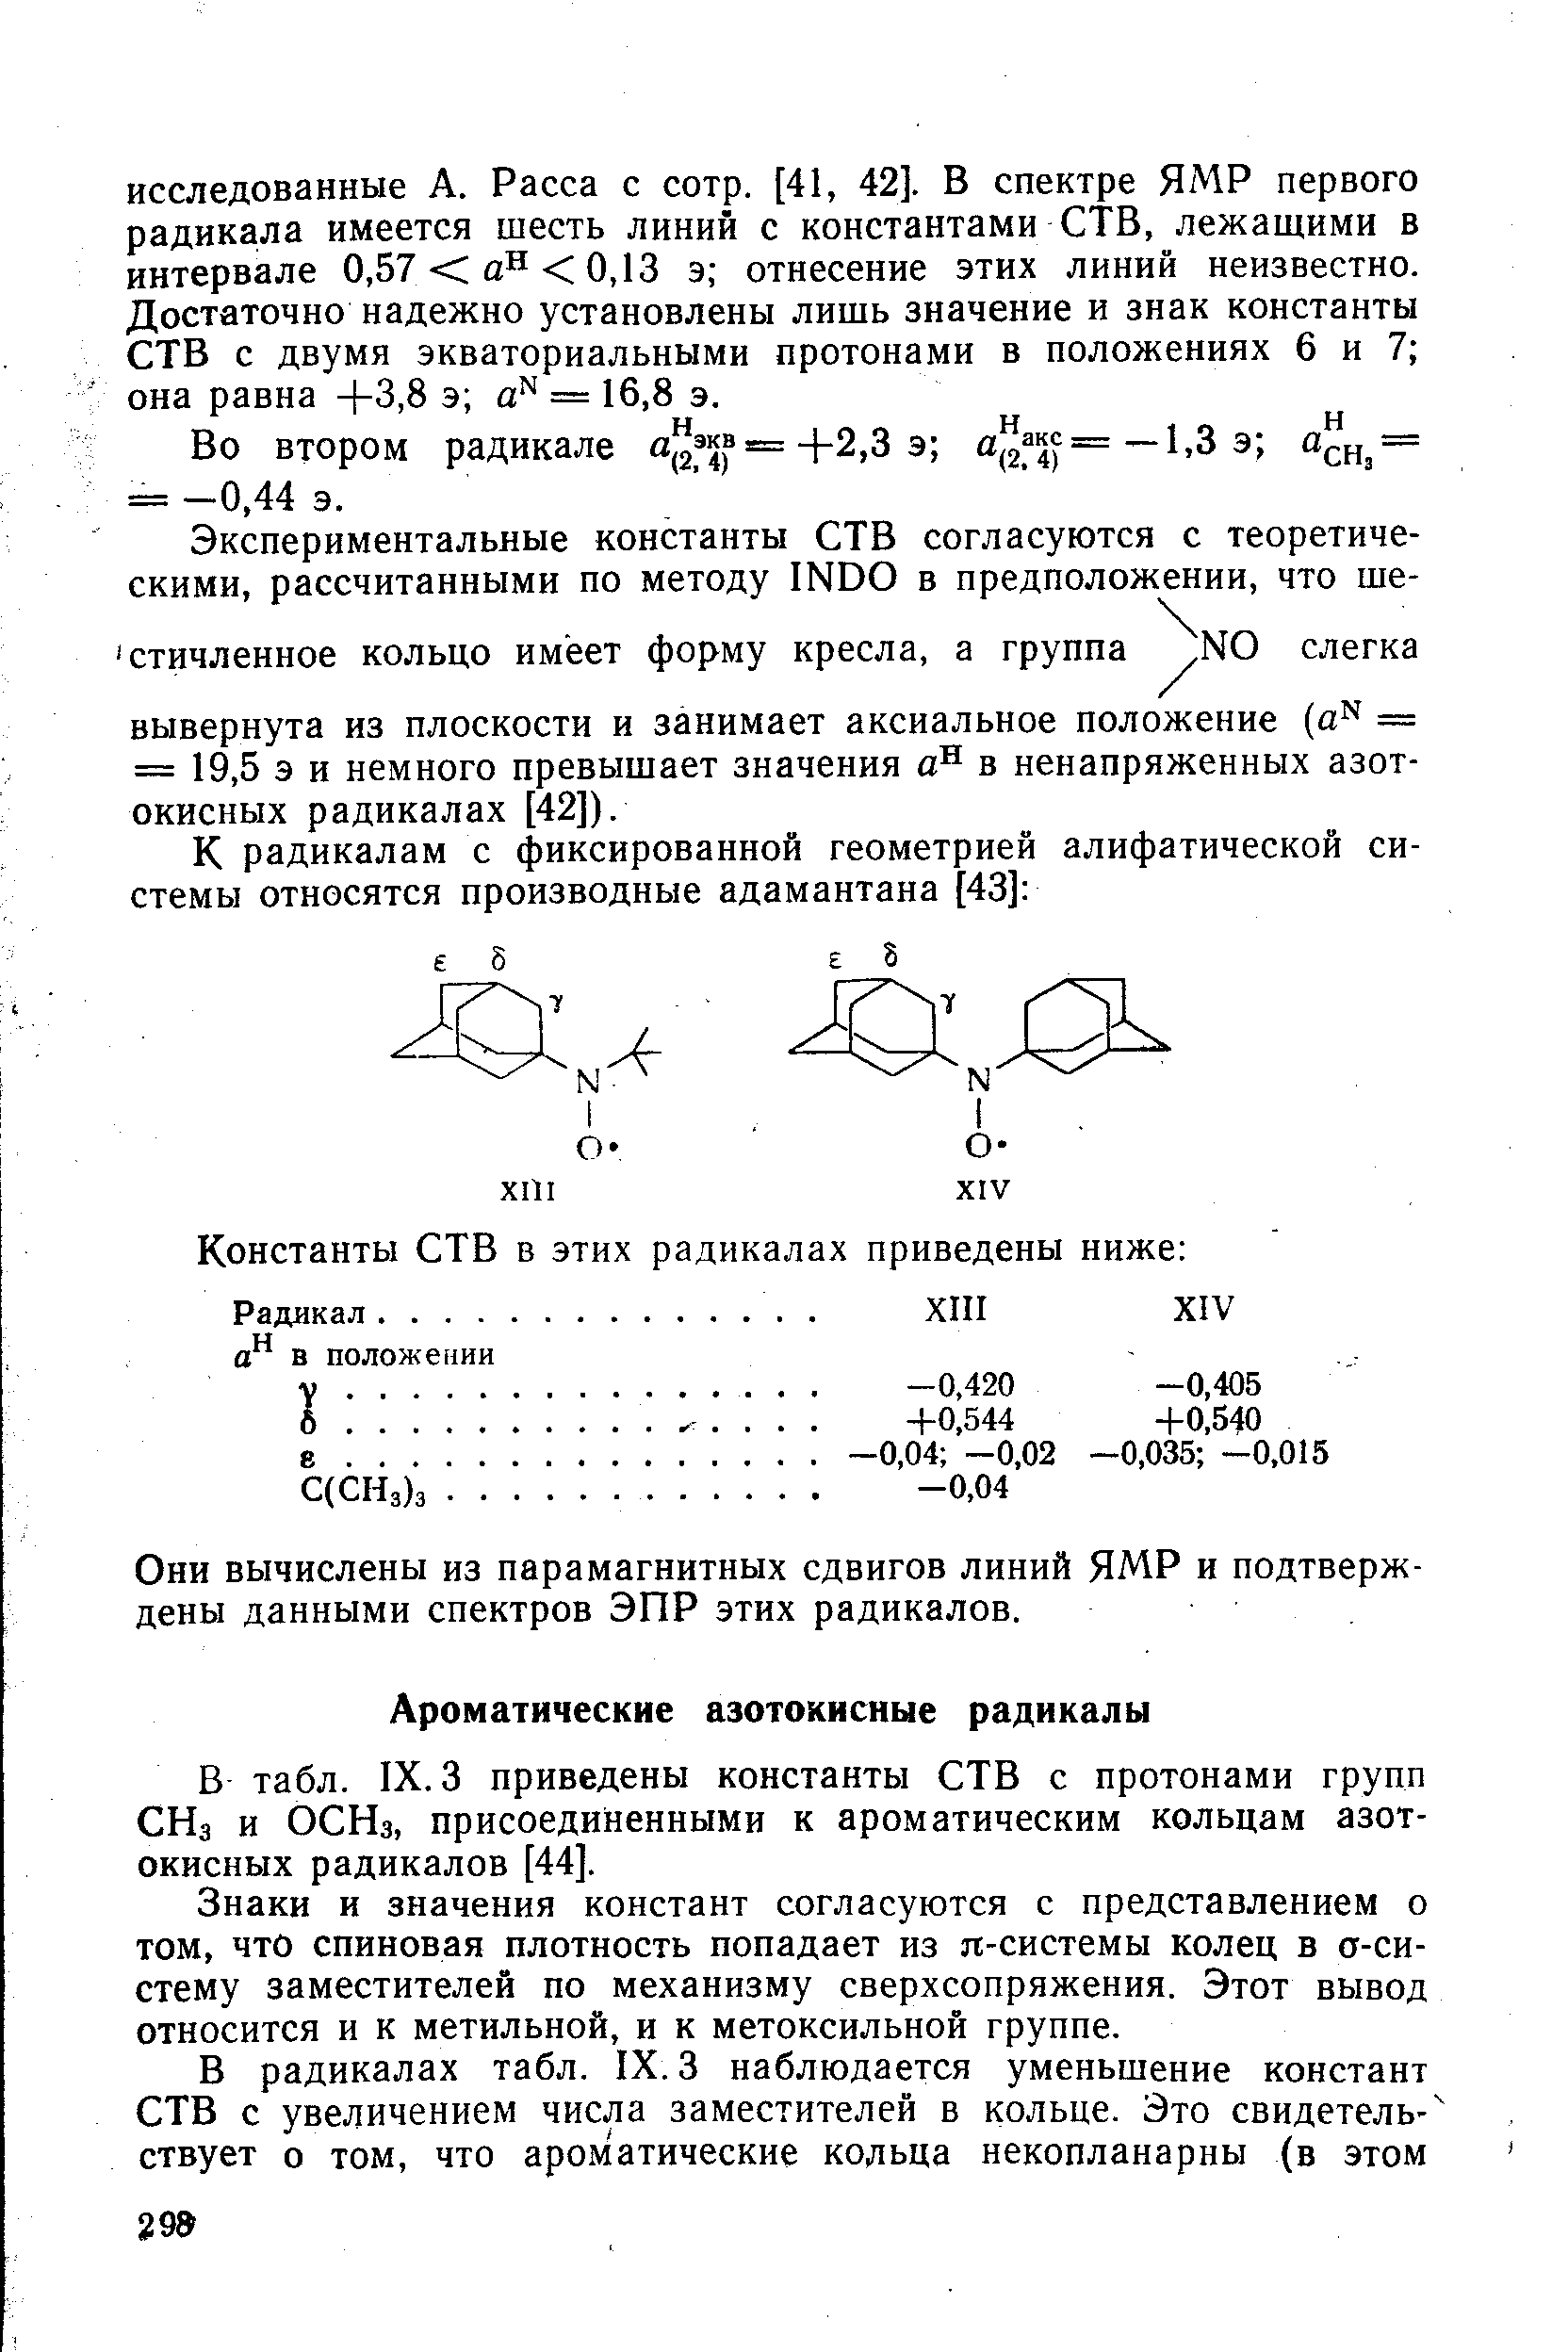 В табл. IX. 3 приведены константы СТВ с протонами групп СНз и ОСНз, присоединенными к ароматическим кольцам азотокисных радикалов [44].